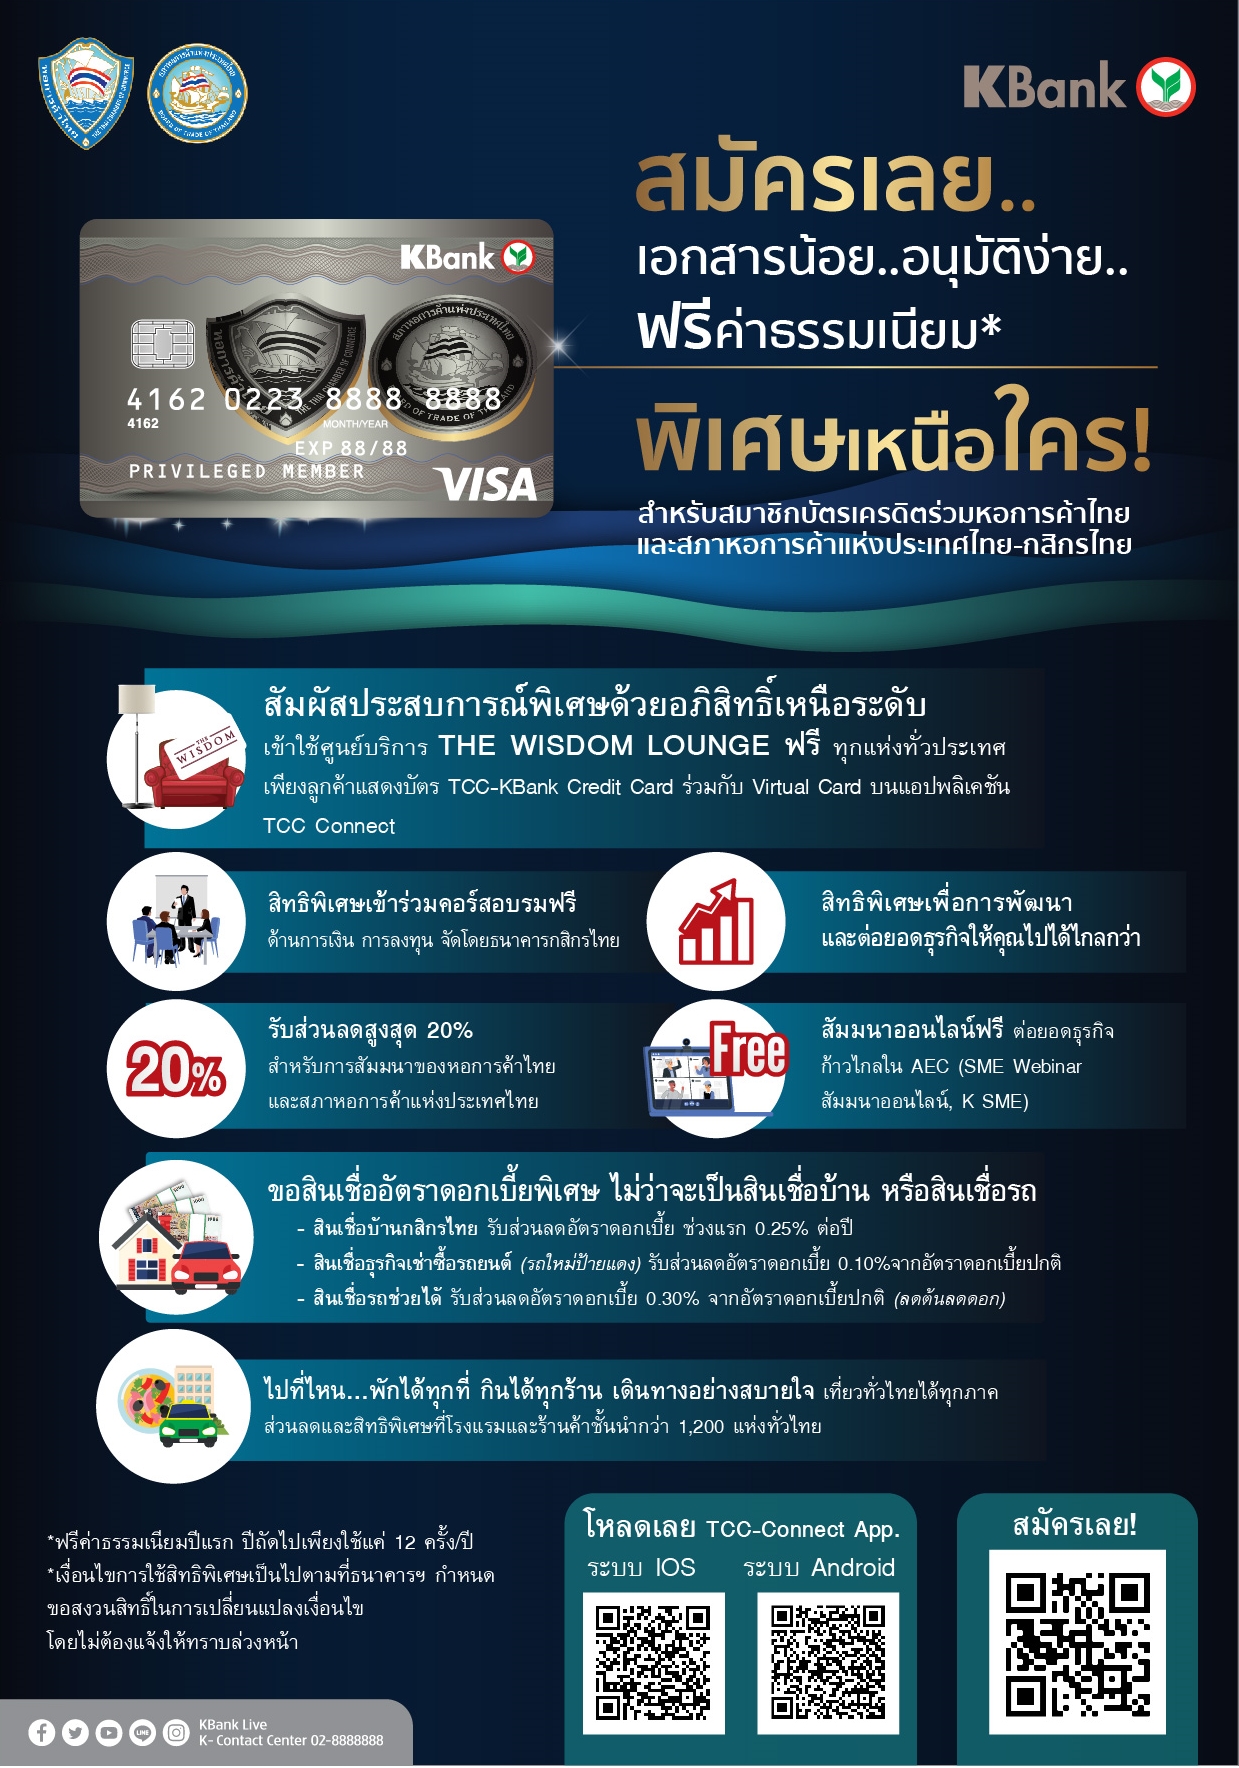 ธนาคารกสิกรไทย เพิ่มสิทธิประโยชน์ต่างๆมากมาย สำหรับผู้ถือบัตรสมาชิกเครดิตร่วมหอการค้าไทย และสภาหอการค้าแห่งประเทศไทย-กสิกรไทย